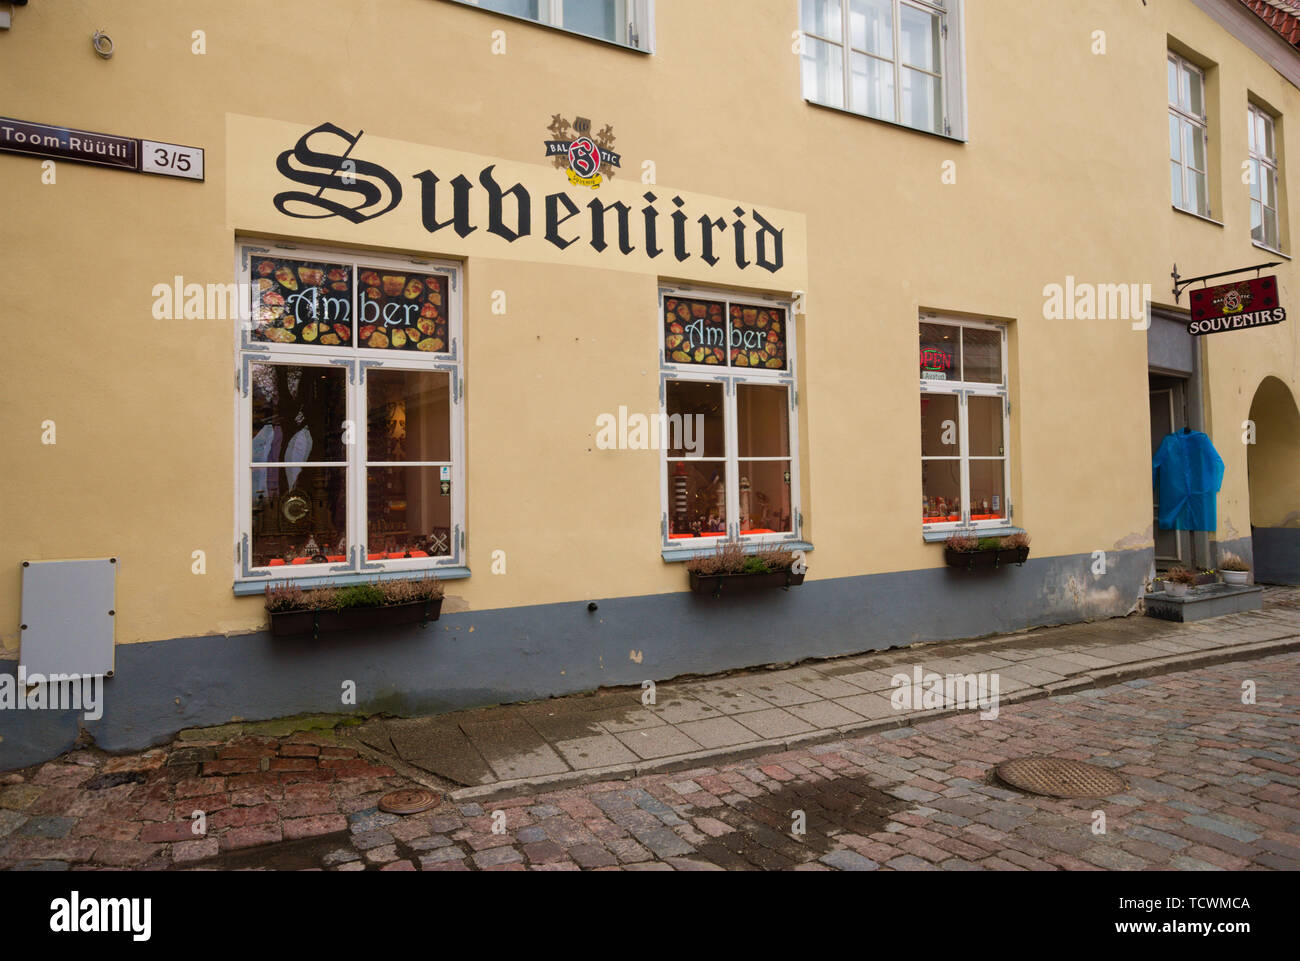 Subeniirid in Tallinn's 'Old Town', Estonia Stock Photo